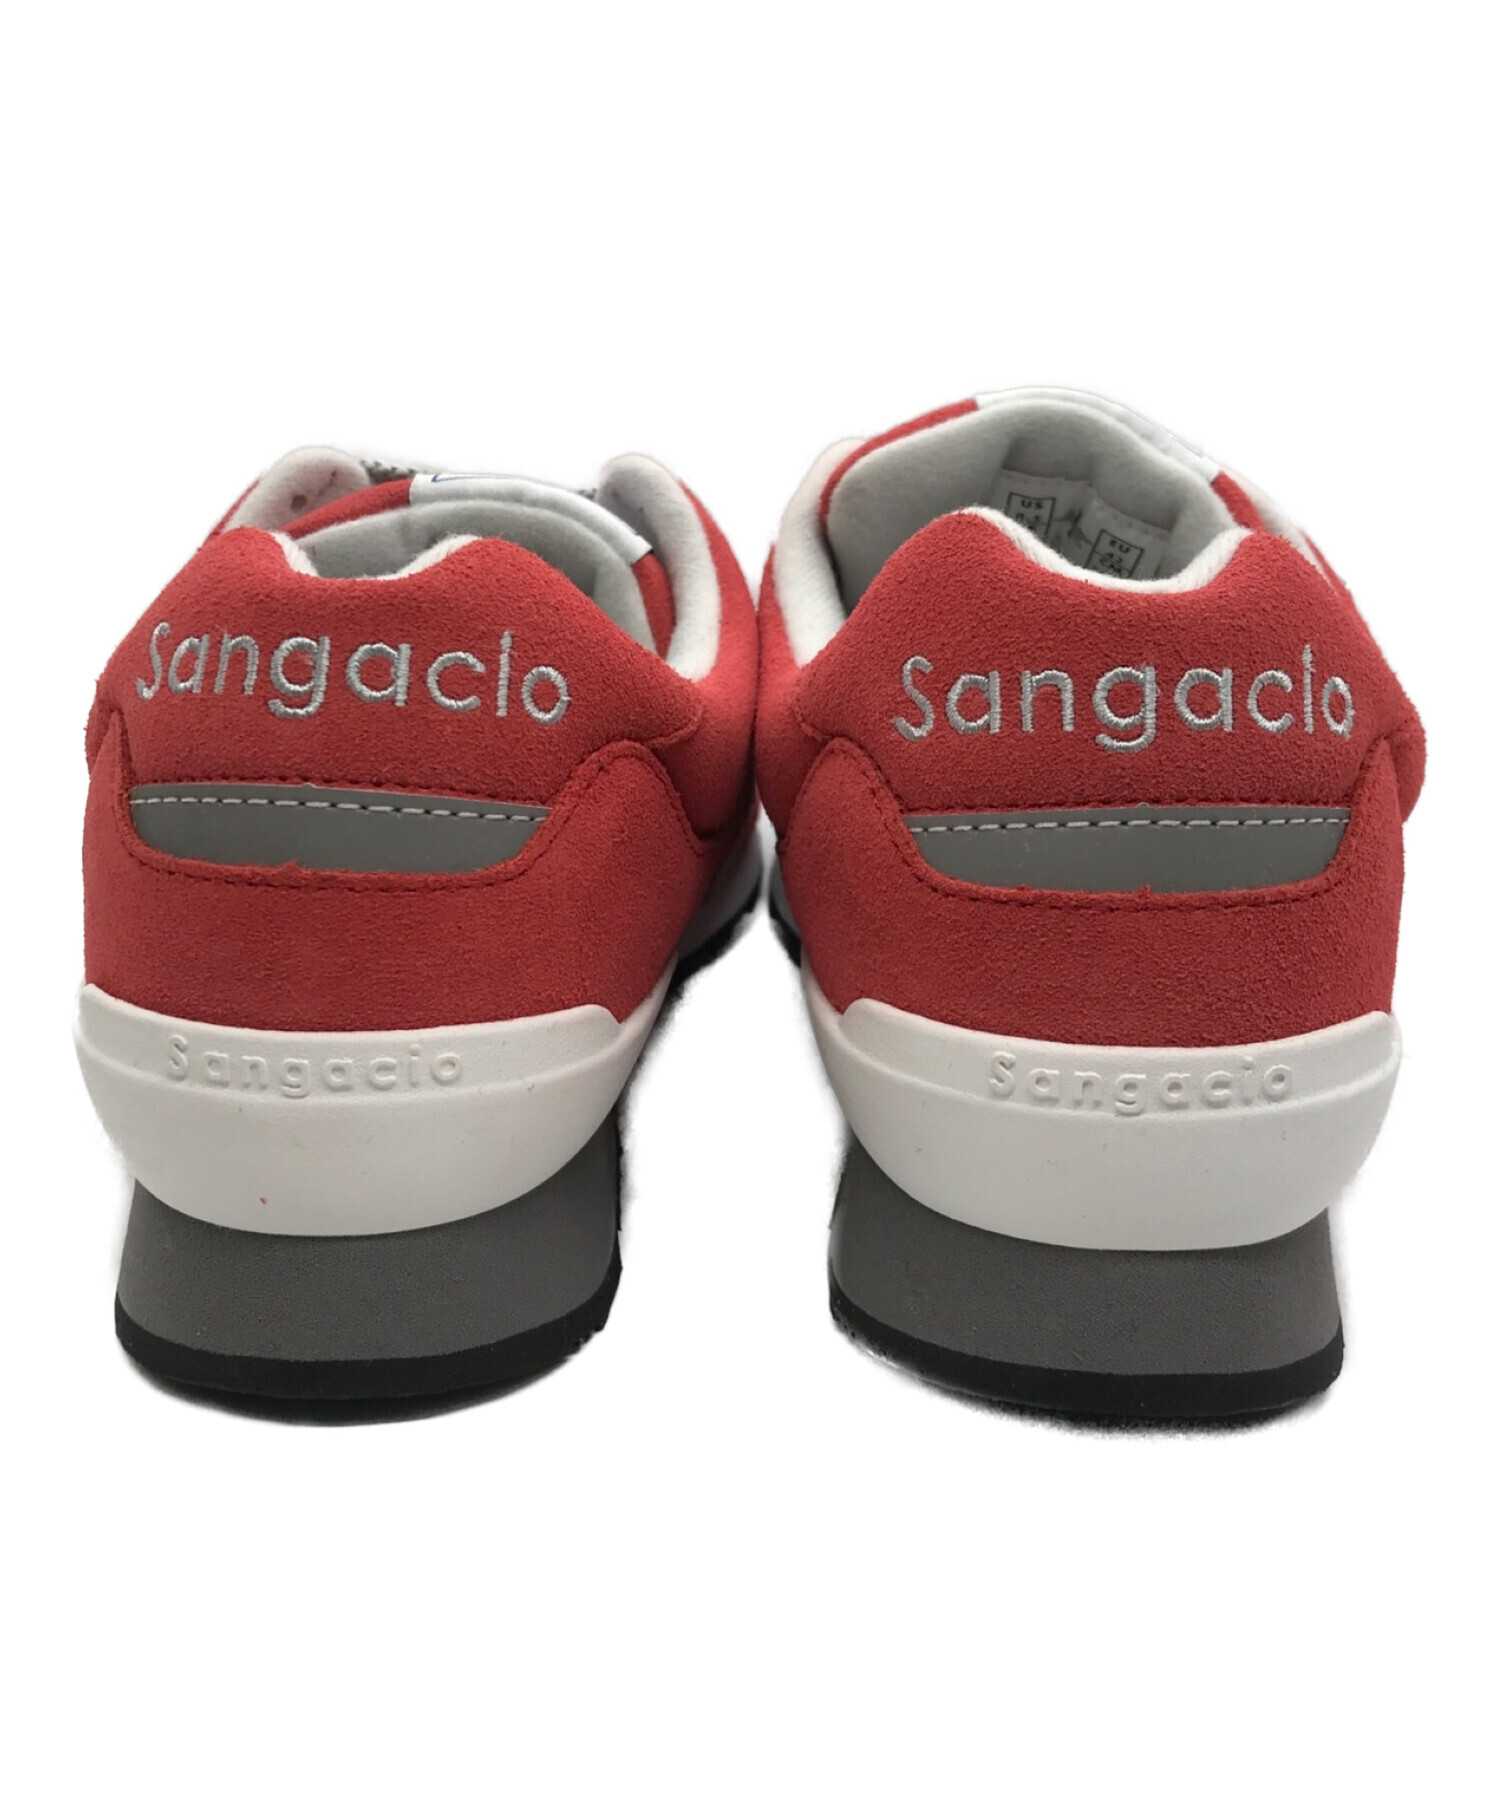 Sangacio (サンガッチョ) にゅーず (ニューズ) ローカットスニーカー レッド サイズ:26.5cm 未使用品